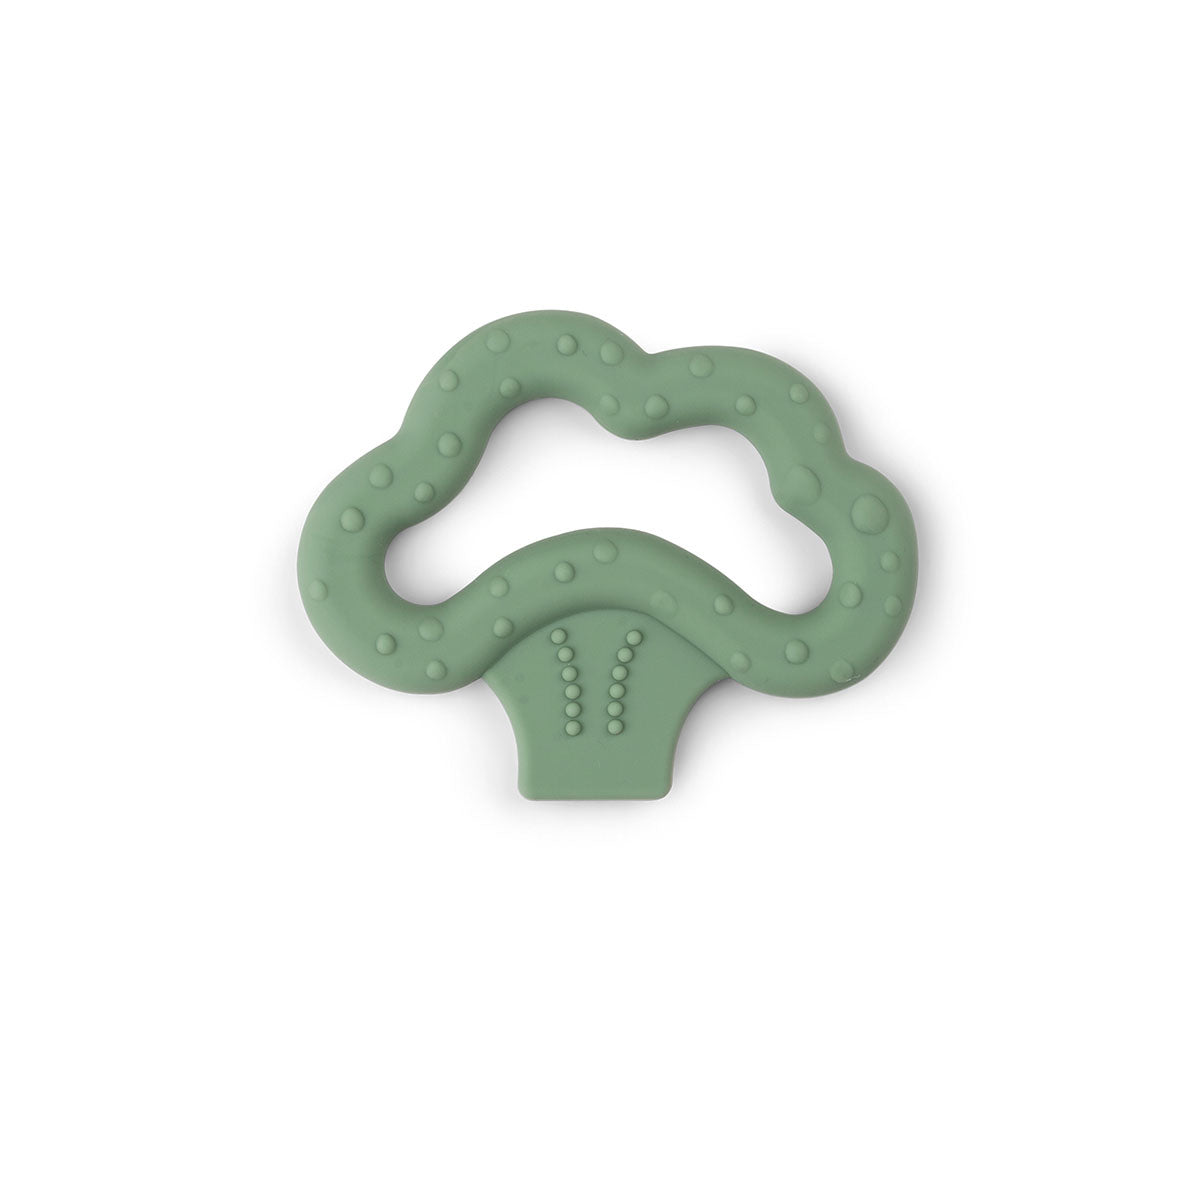 Tiny activity toy set 3 pcs - Croco - Green